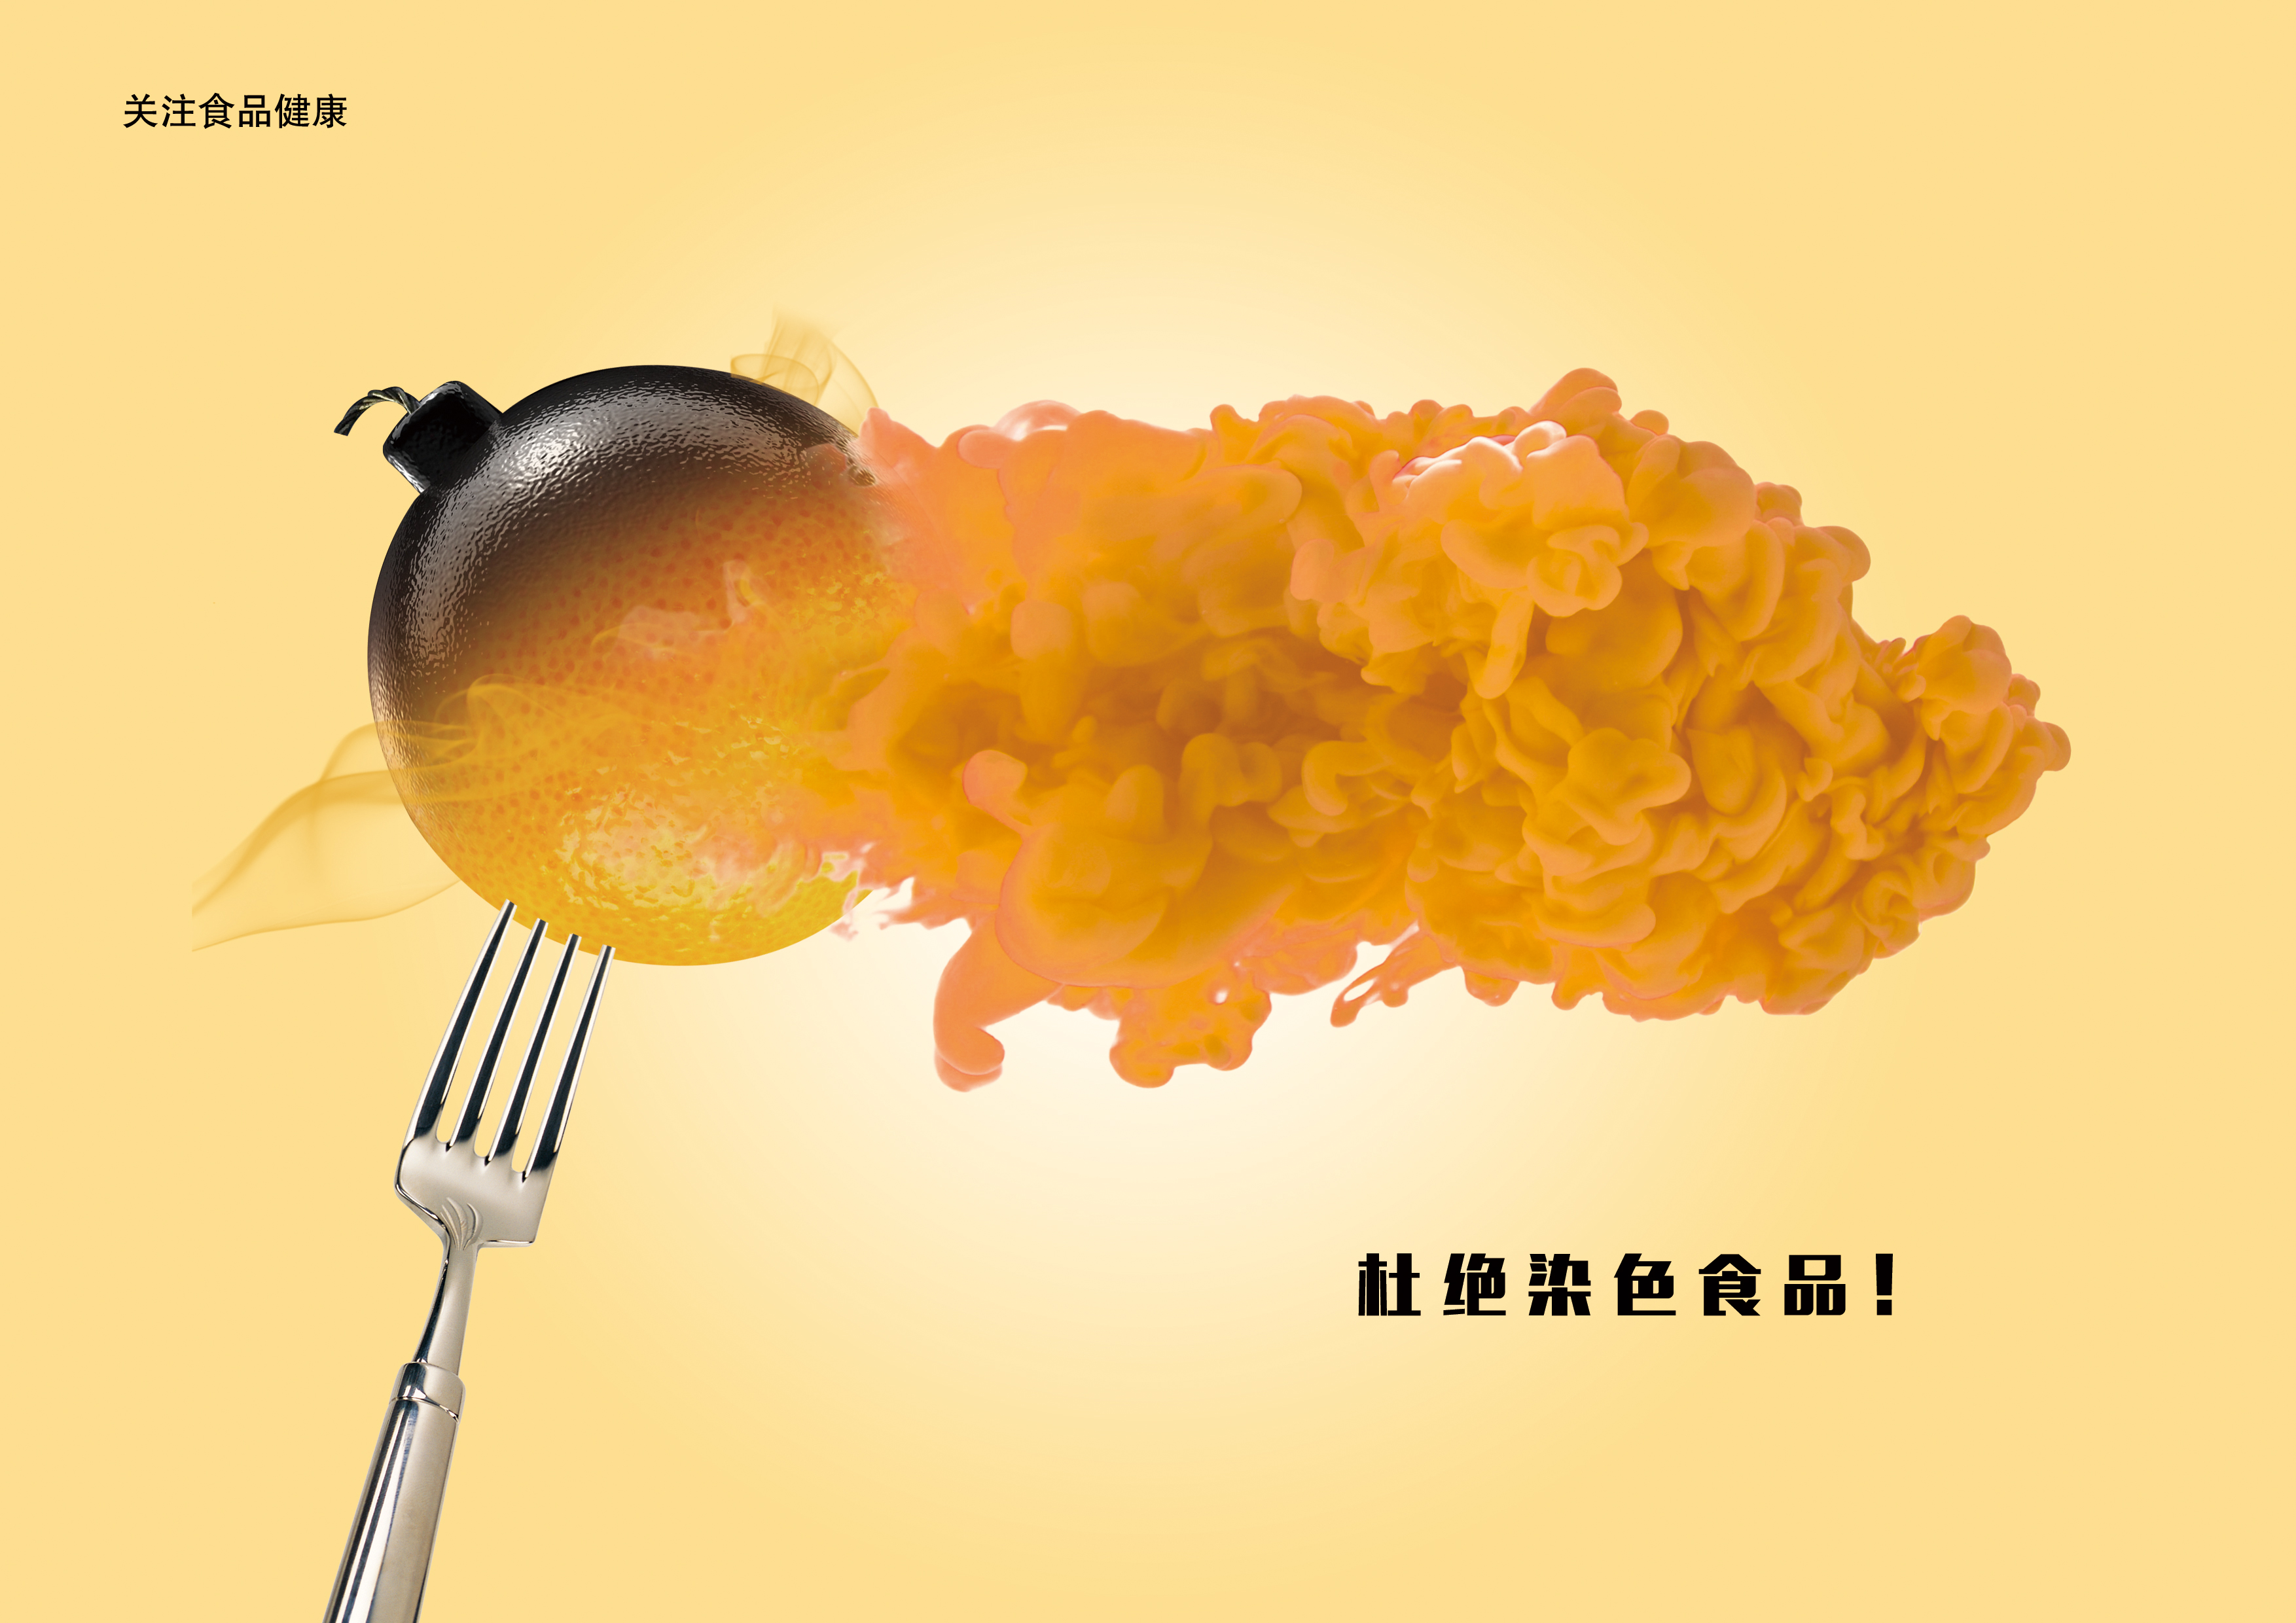 染色食品系列-橘子篇+RGB.jpg